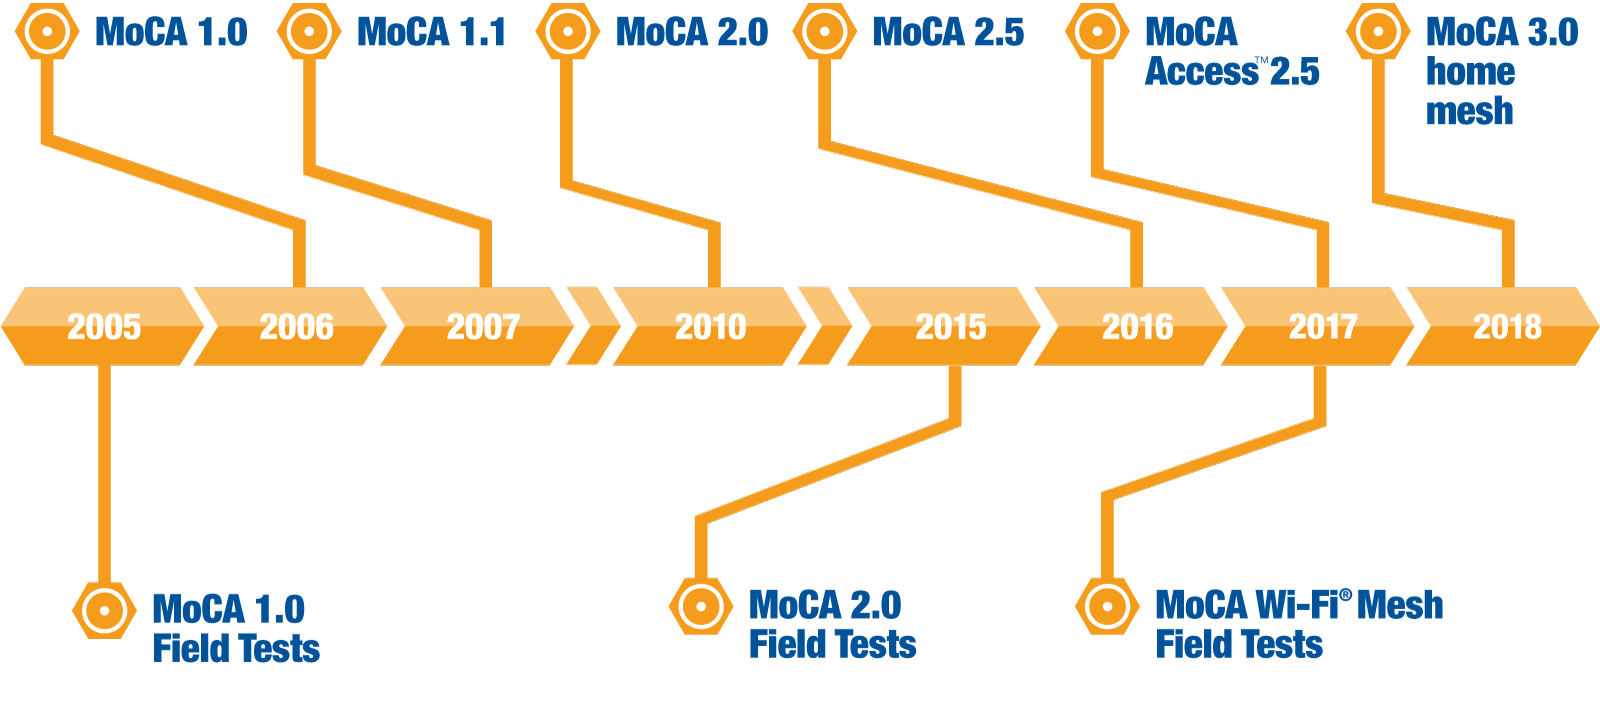 MoCA roadmap